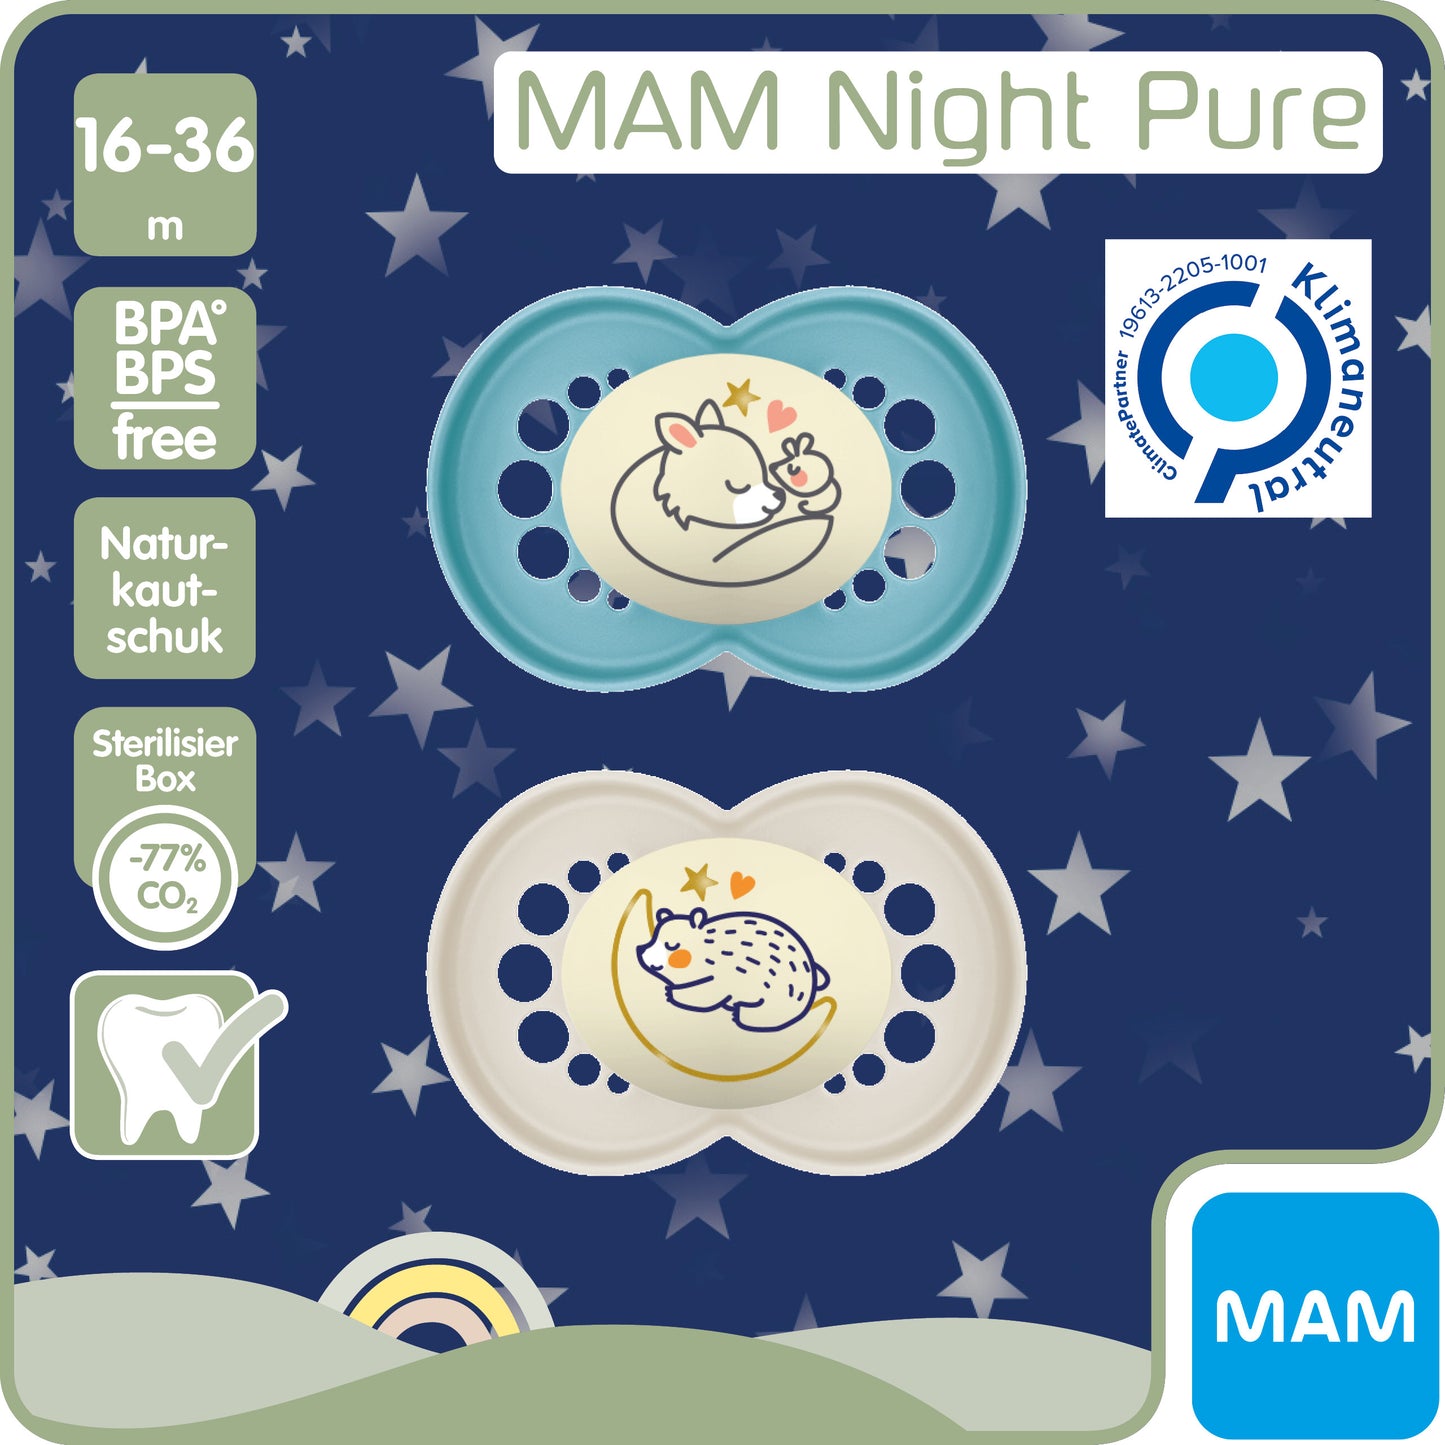 MAM Original Pure Night 16-36m, Naturkautschuk